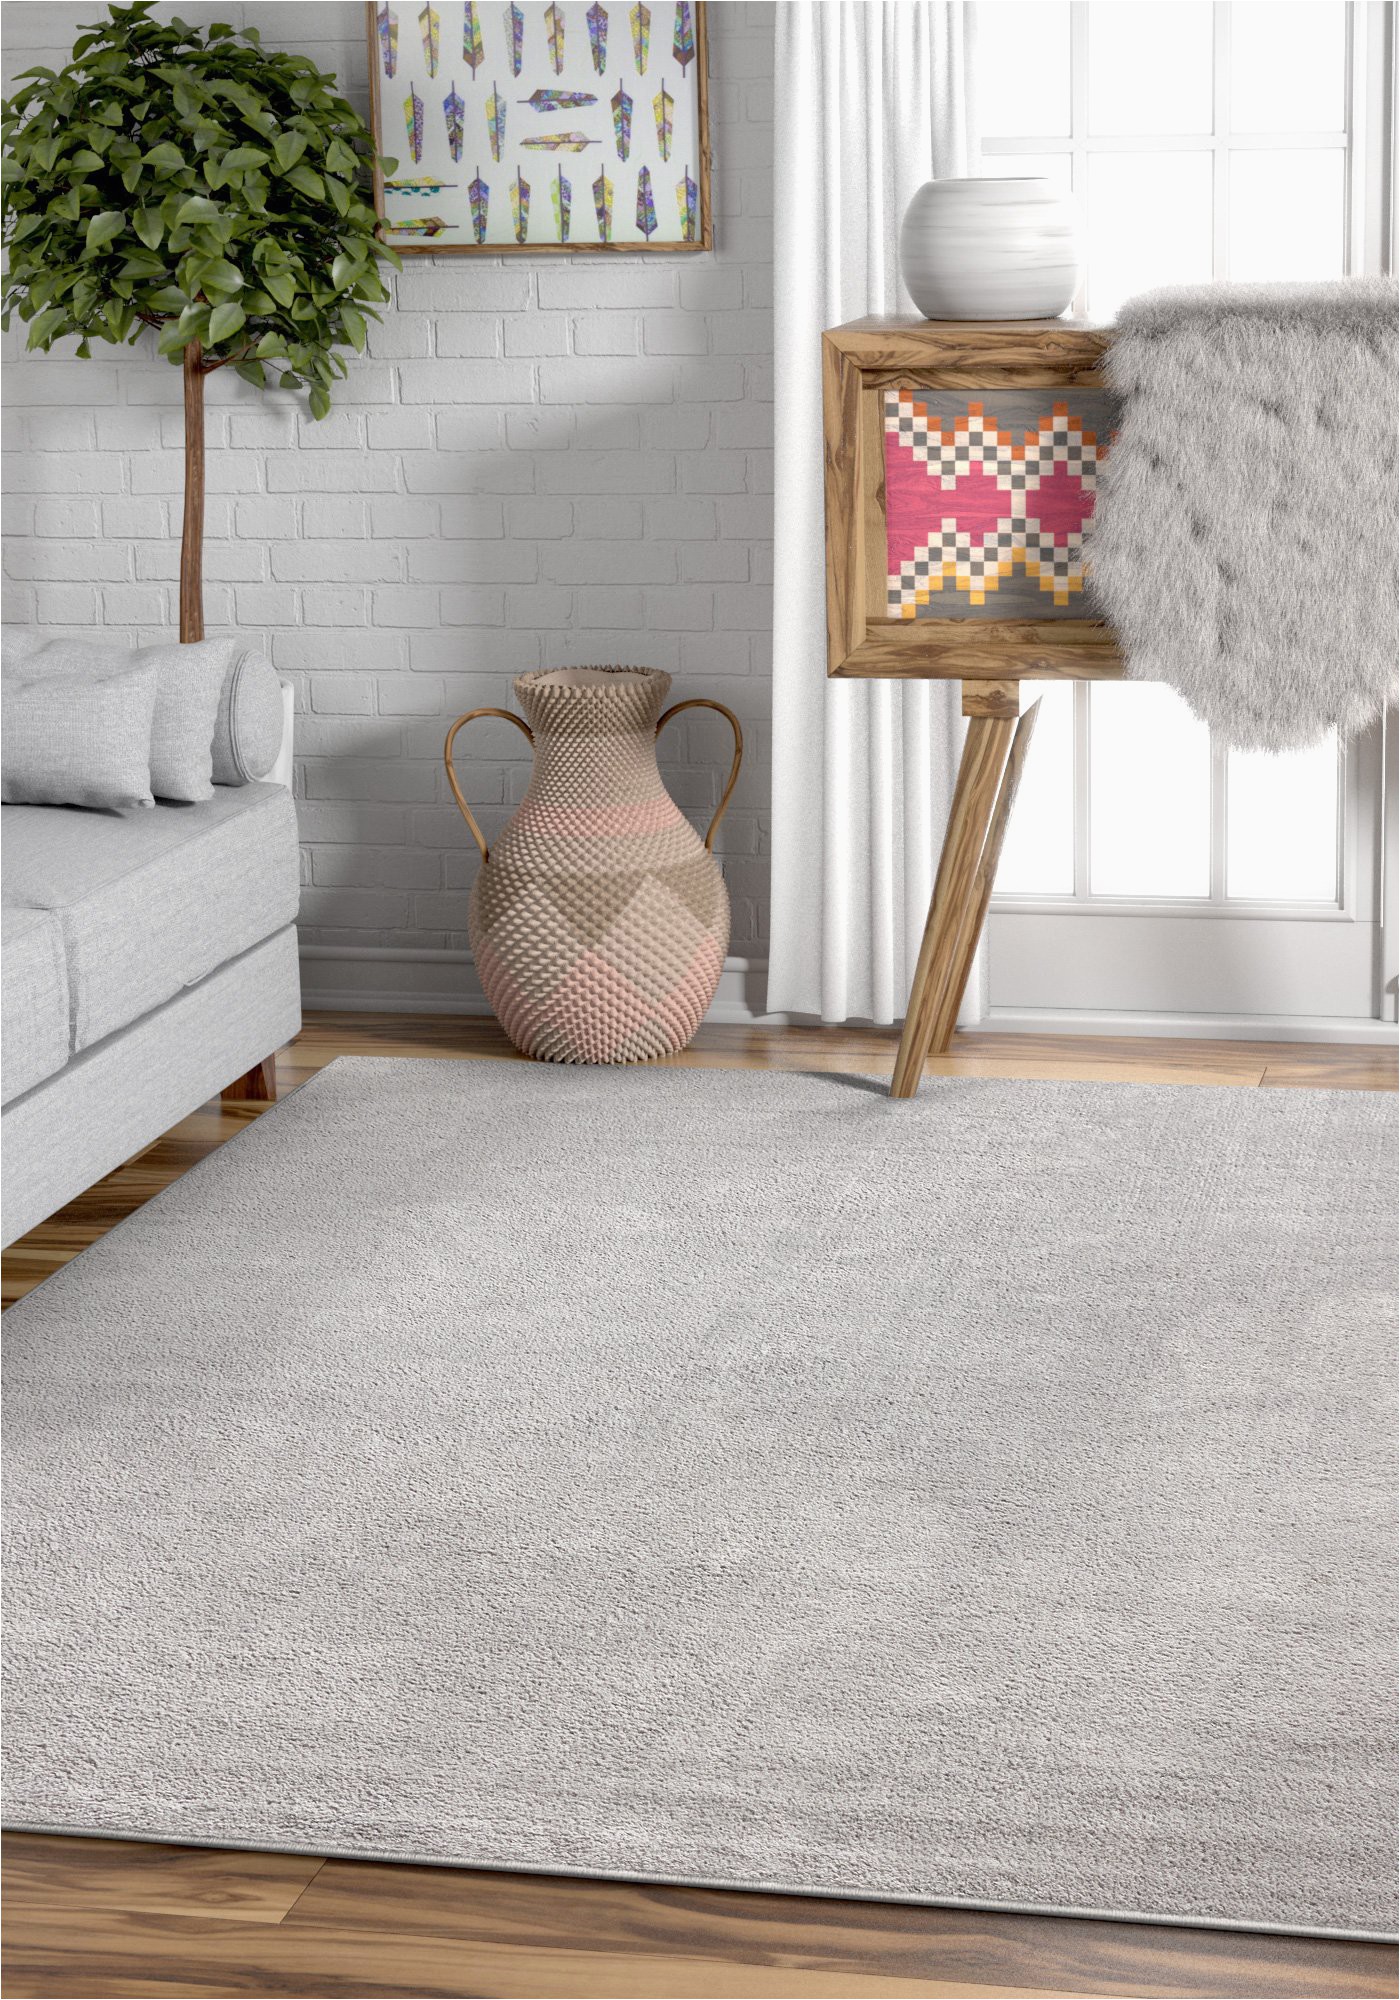 Solid Light Grey area Rug Drexel Shimmer Light Grey solid Color Plain Microfiber area Rug Ultra soft Carpet